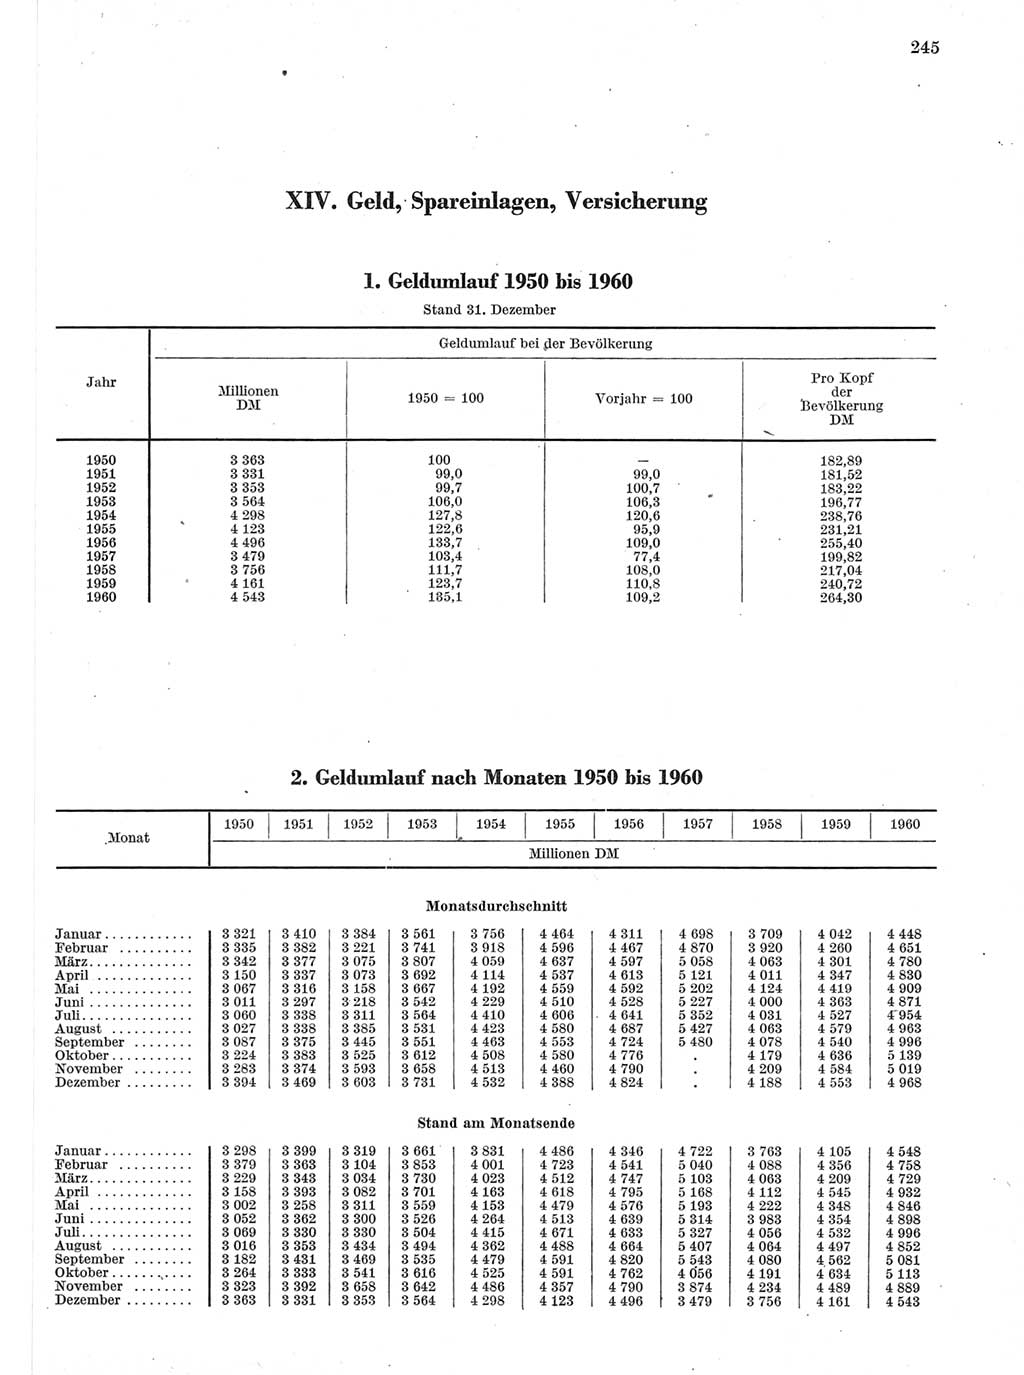 Statistisches Jahrbuch der Deutschen Demokratischen Republik (DDR) 1960-1961, Seite 245 (Stat. Jb. DDR 1960-1961, S. 245)